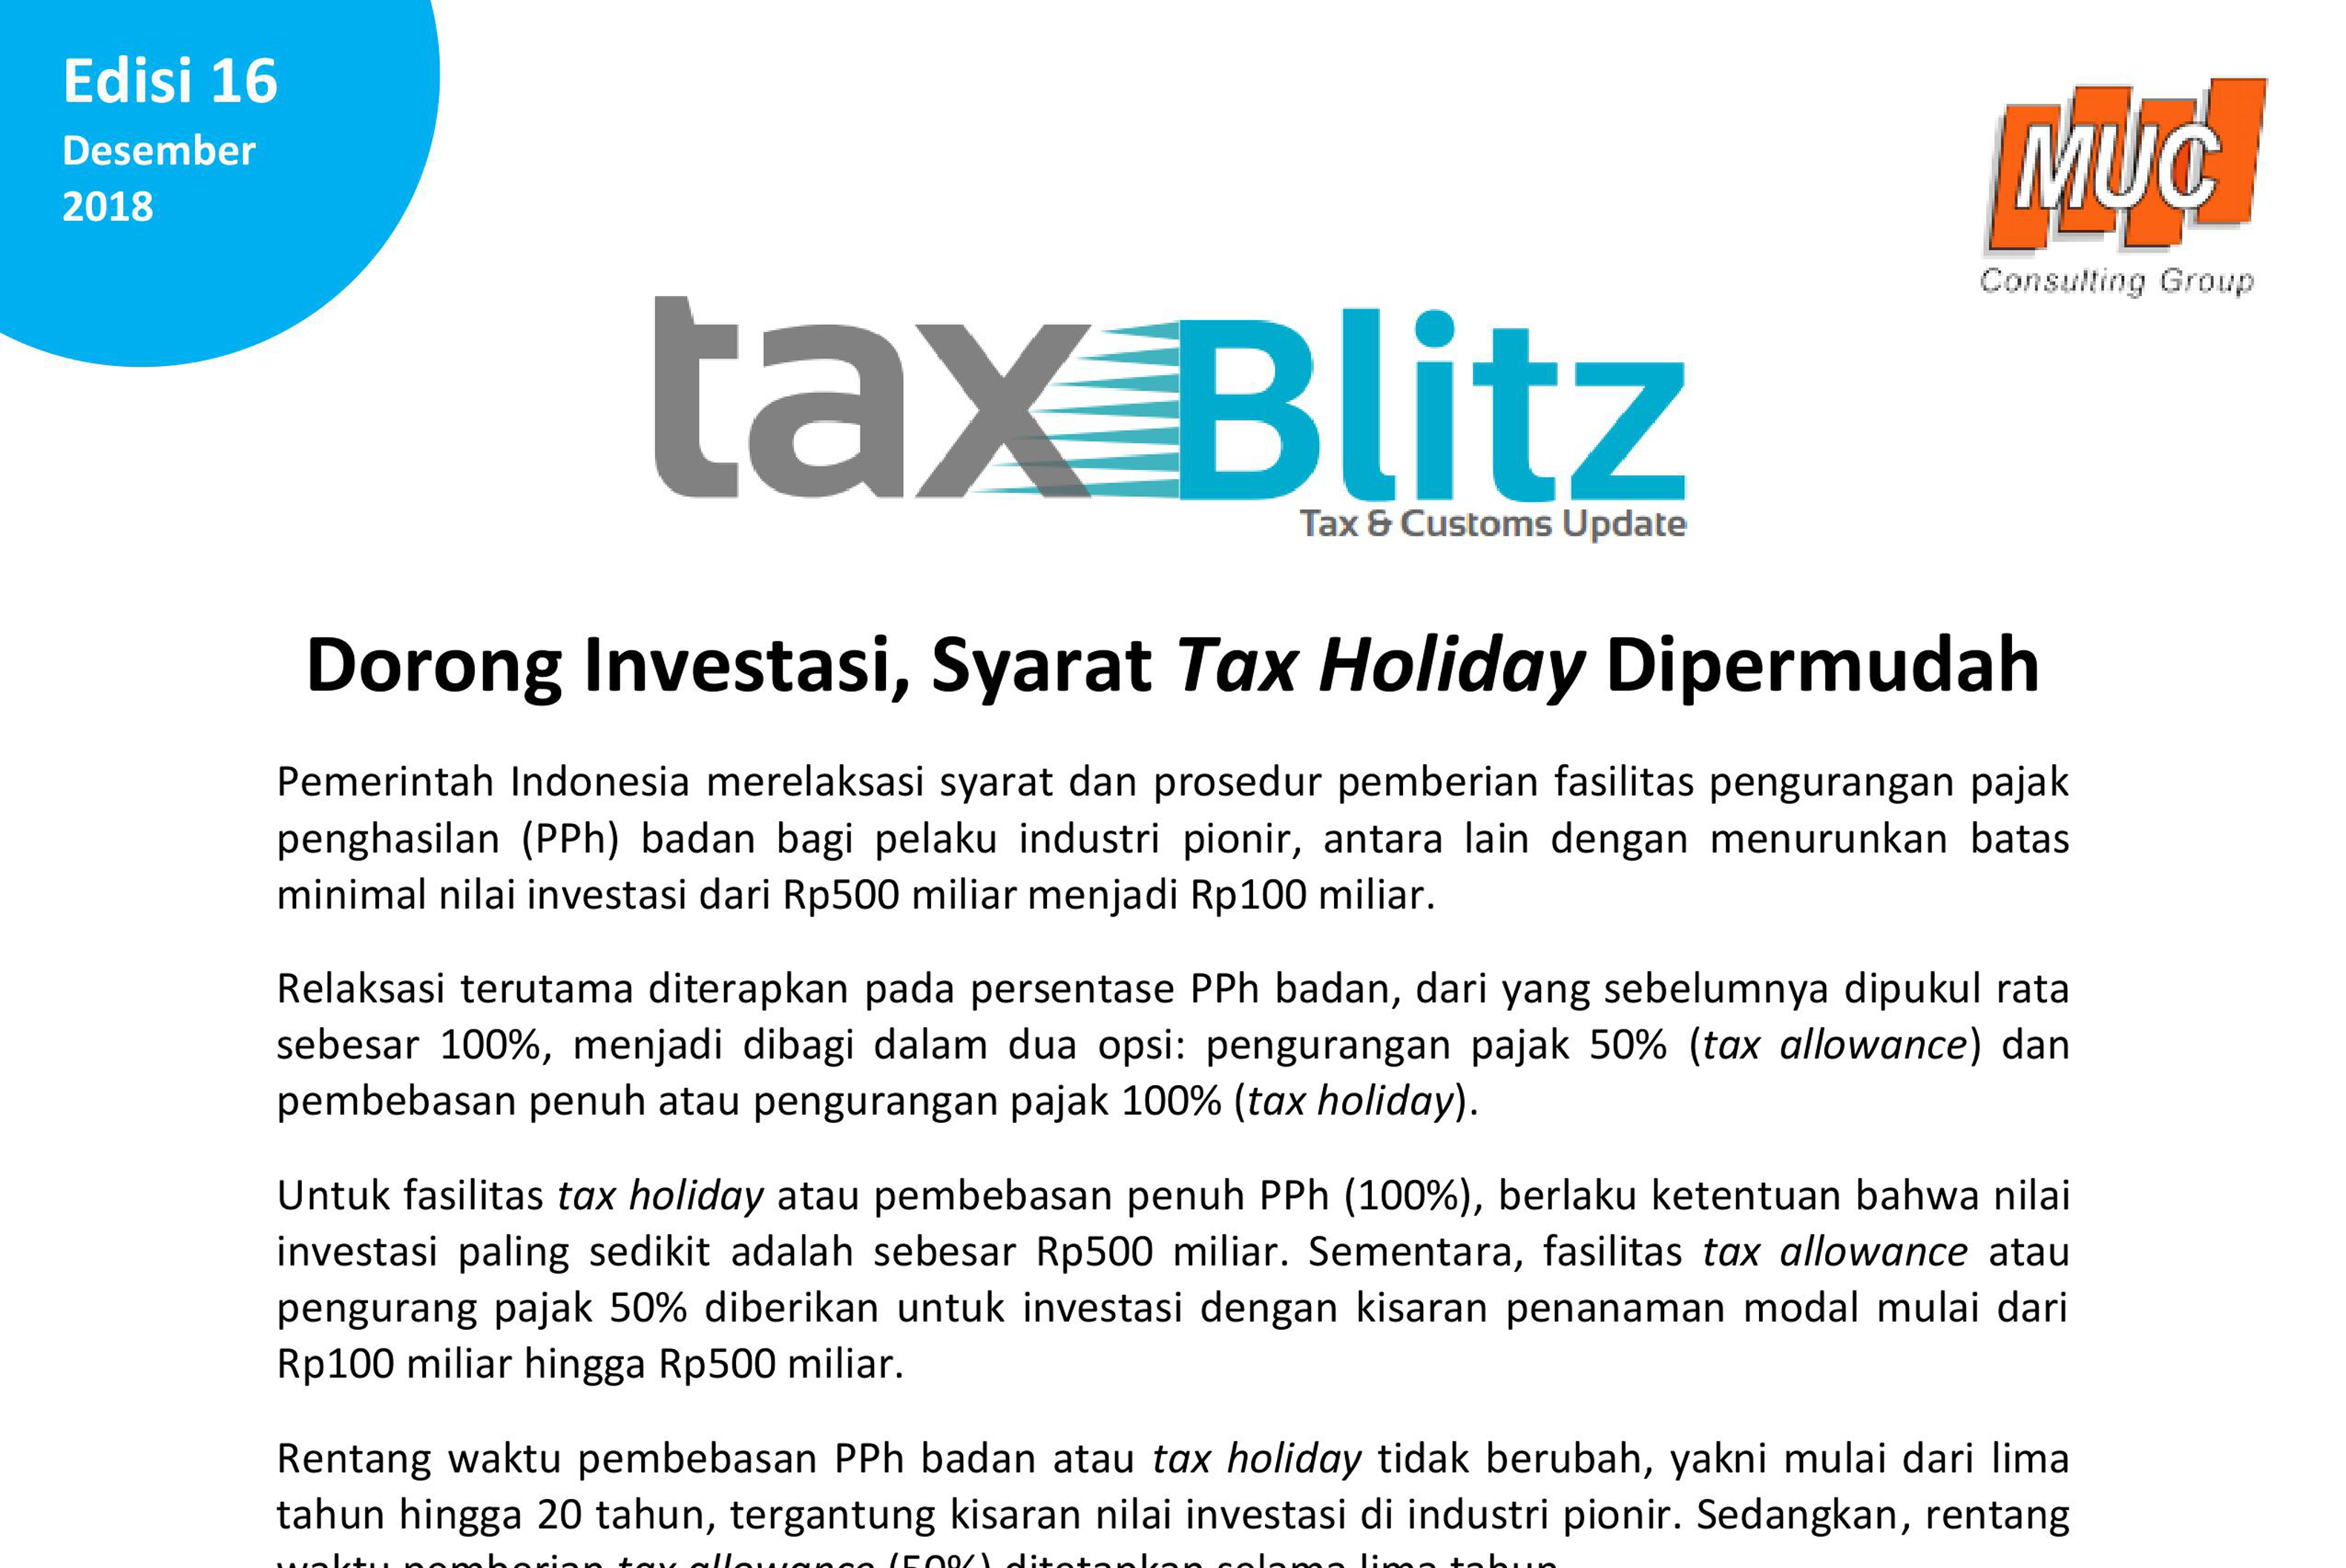 Dorong Investasi, Syarat Tax Holiday Dipermudah